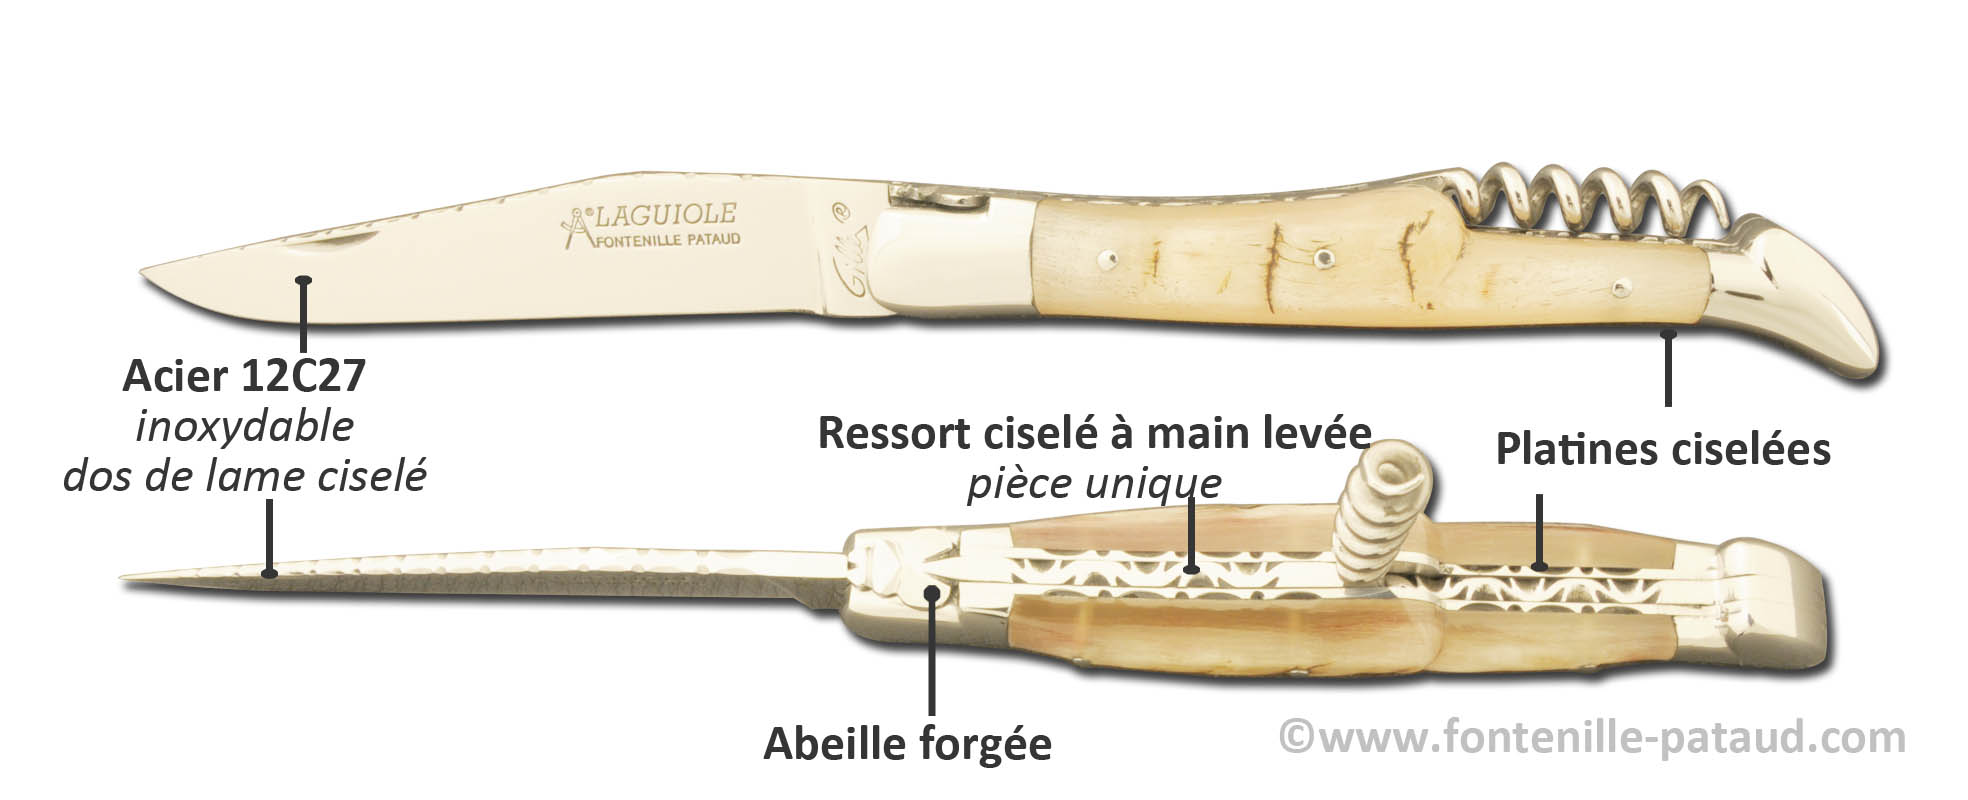 Couteau Laguiole guilloché avec tire-bouchon